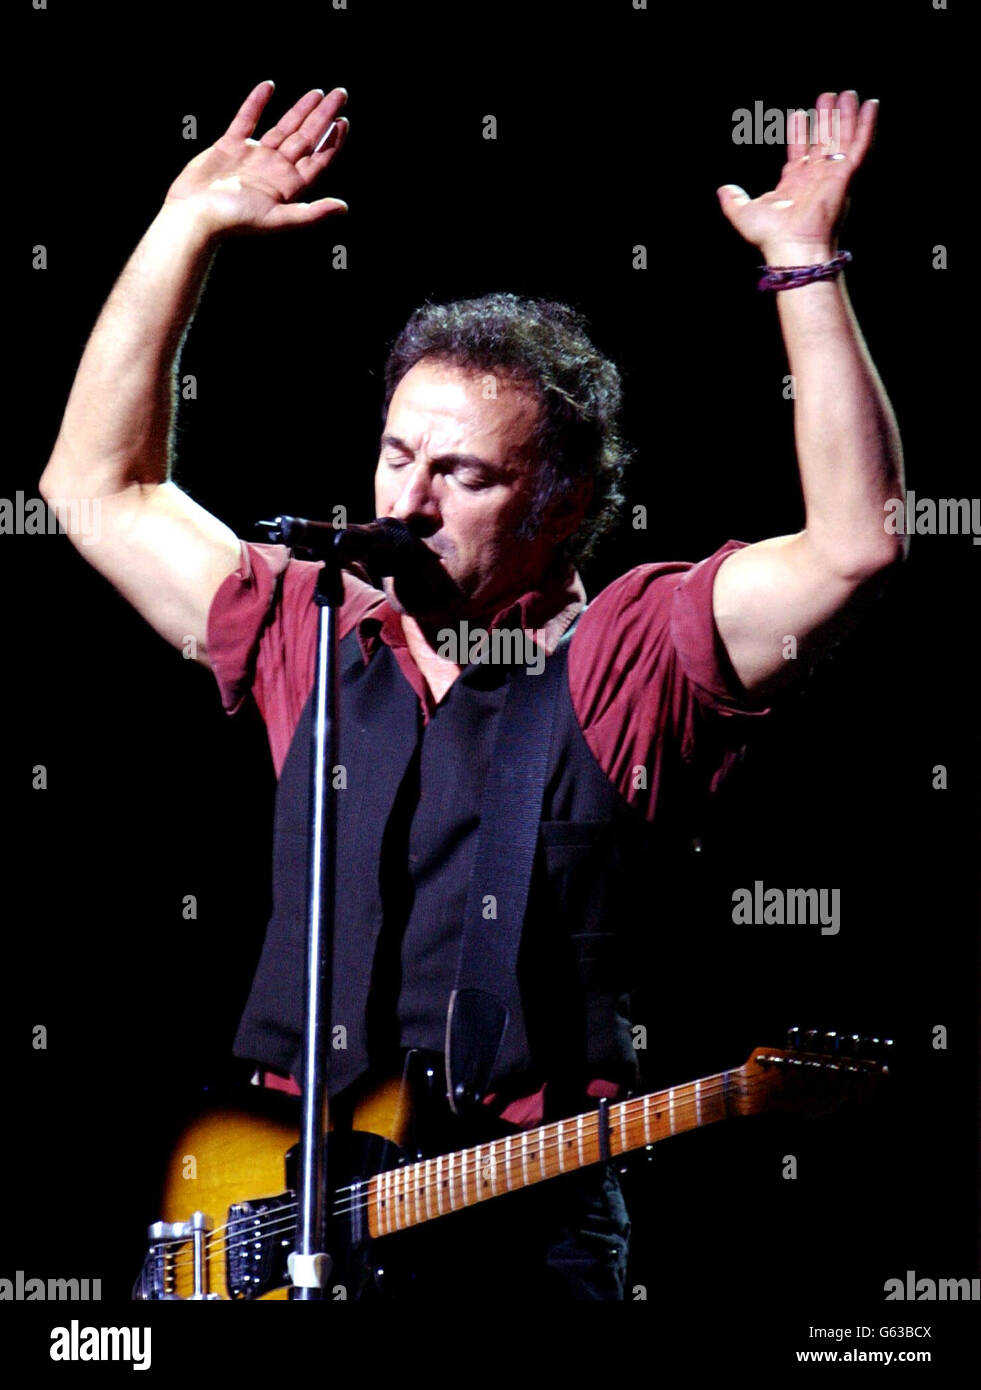 Bruce Springsteen, la star du rock américain, se présentant sur scène lors d'un concert unique à Londres au Wembley Arena dans le cadre de sa tournée mondiale après la sortie de son premier album pendant huit ans, « The Rising ». Banque D'Images